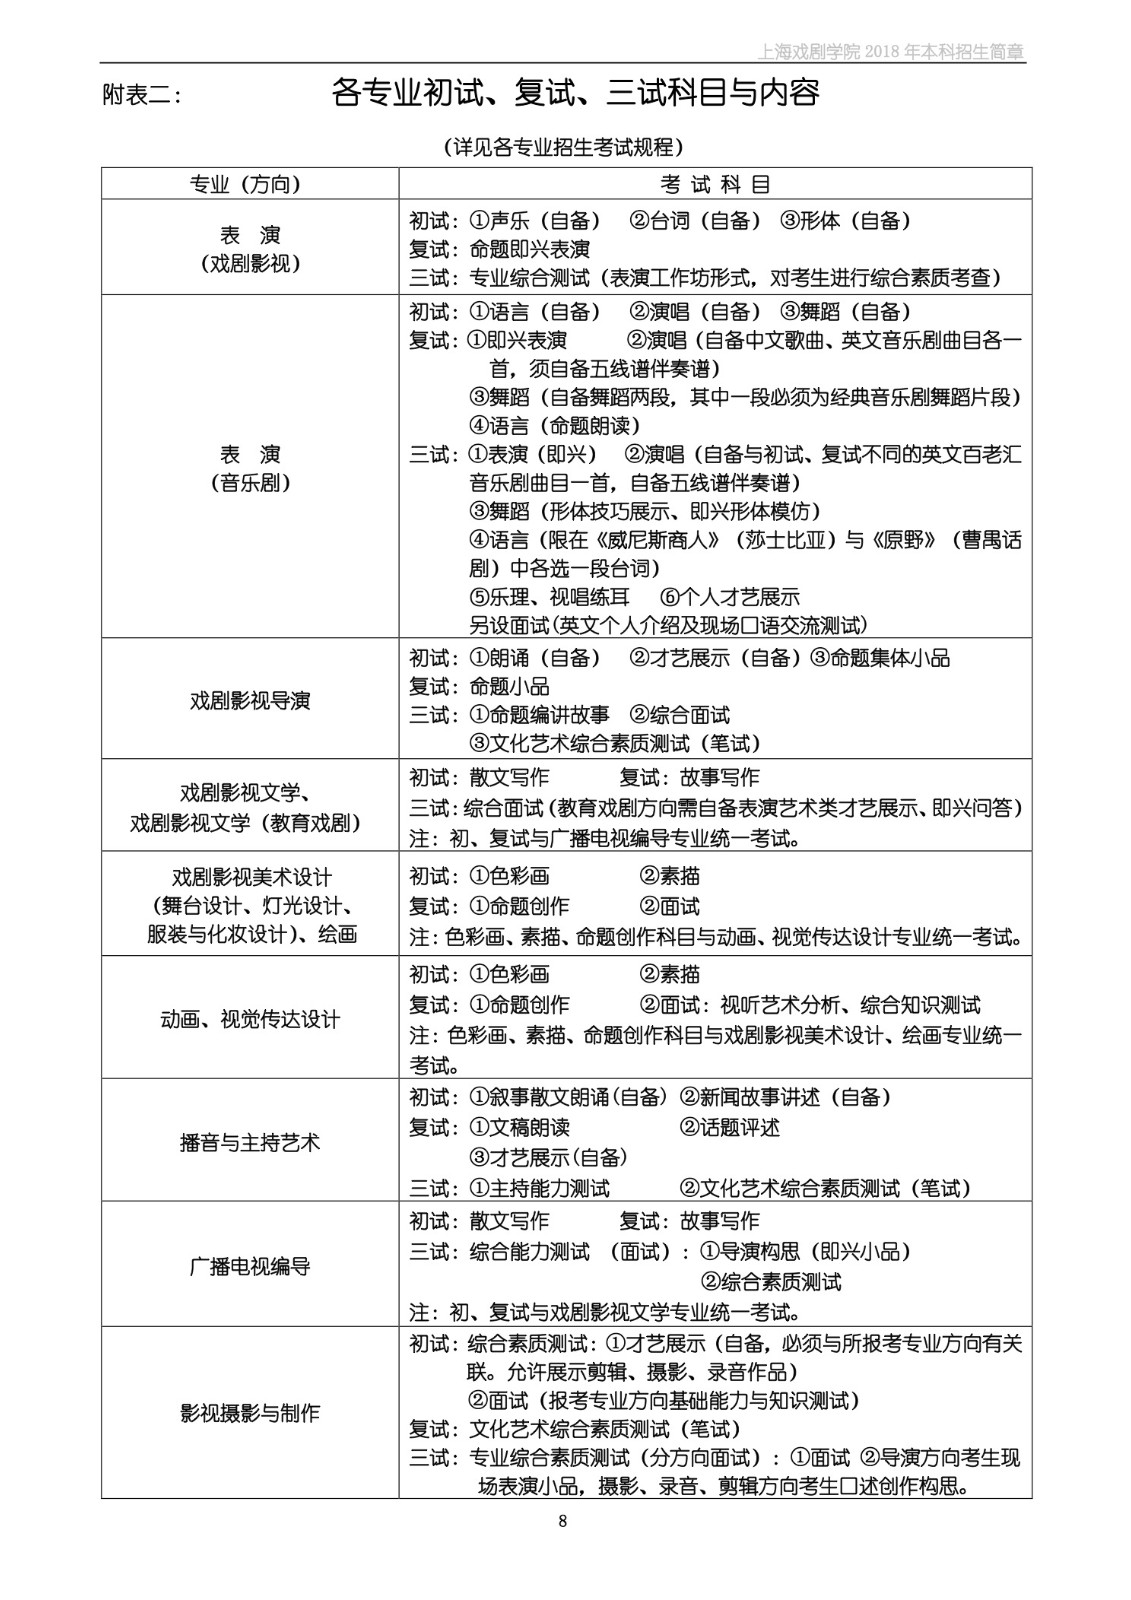 上海戏剧学院2018年本科招生简章-page8.jpeg